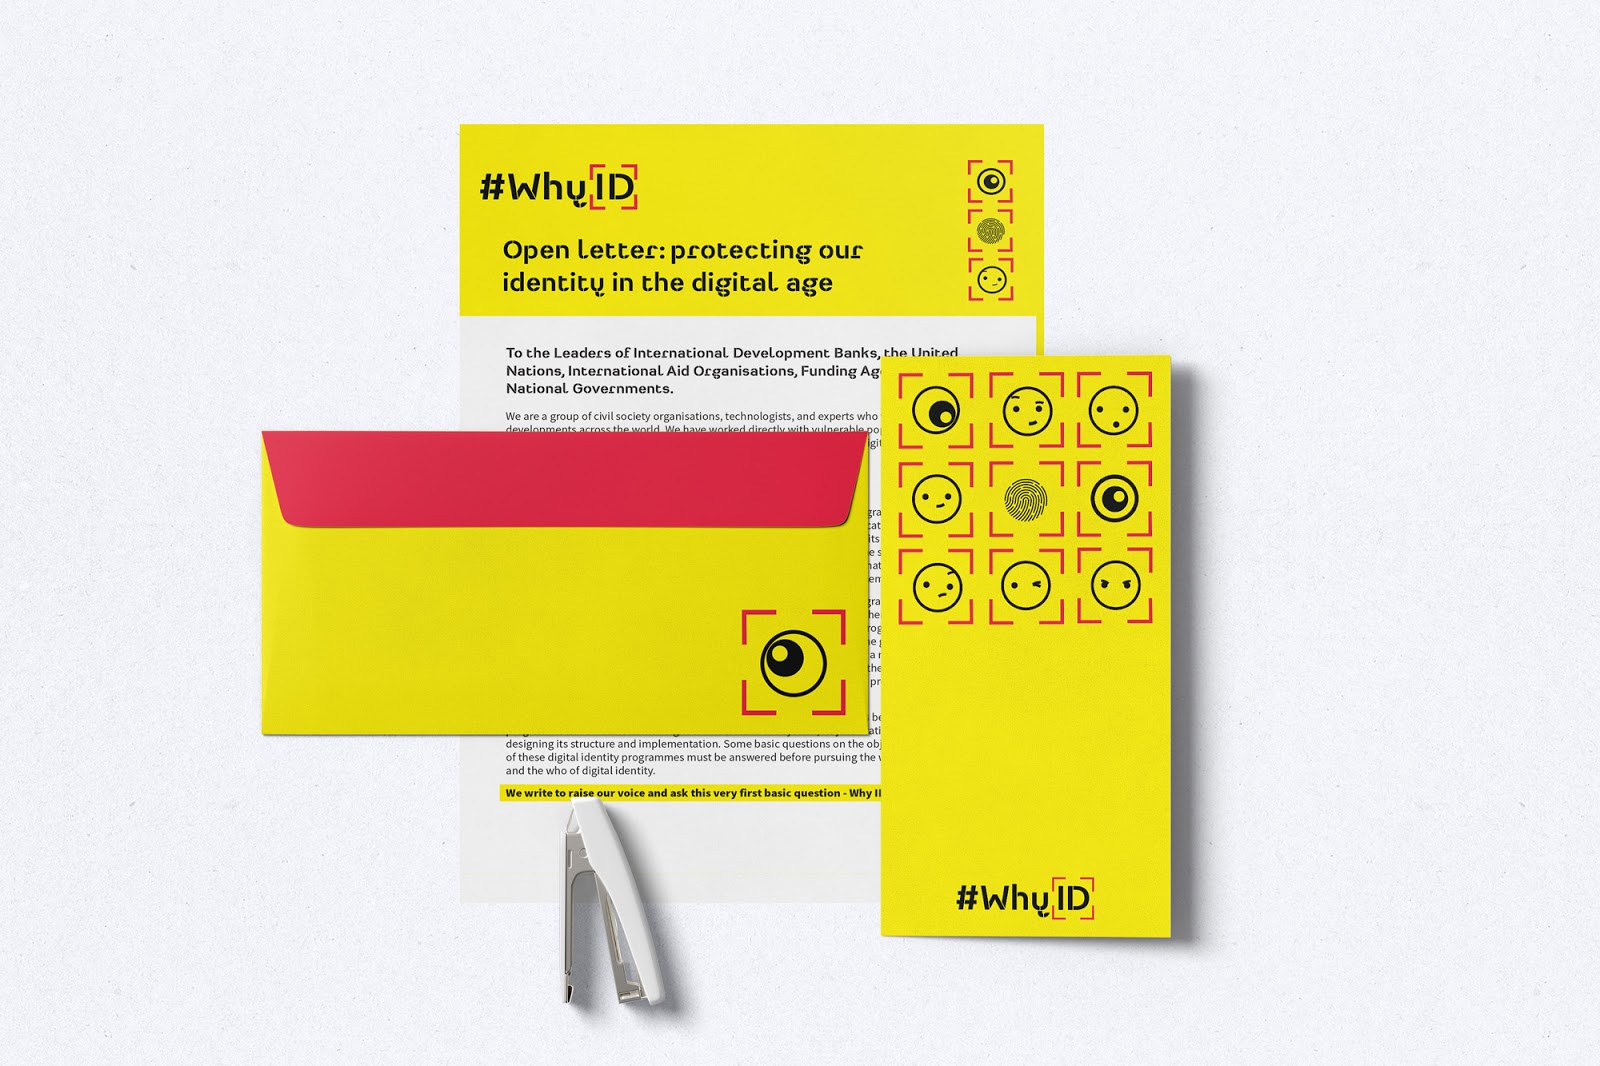 #WhyID open letter branding of letterhead, envelopes and phamphlets.